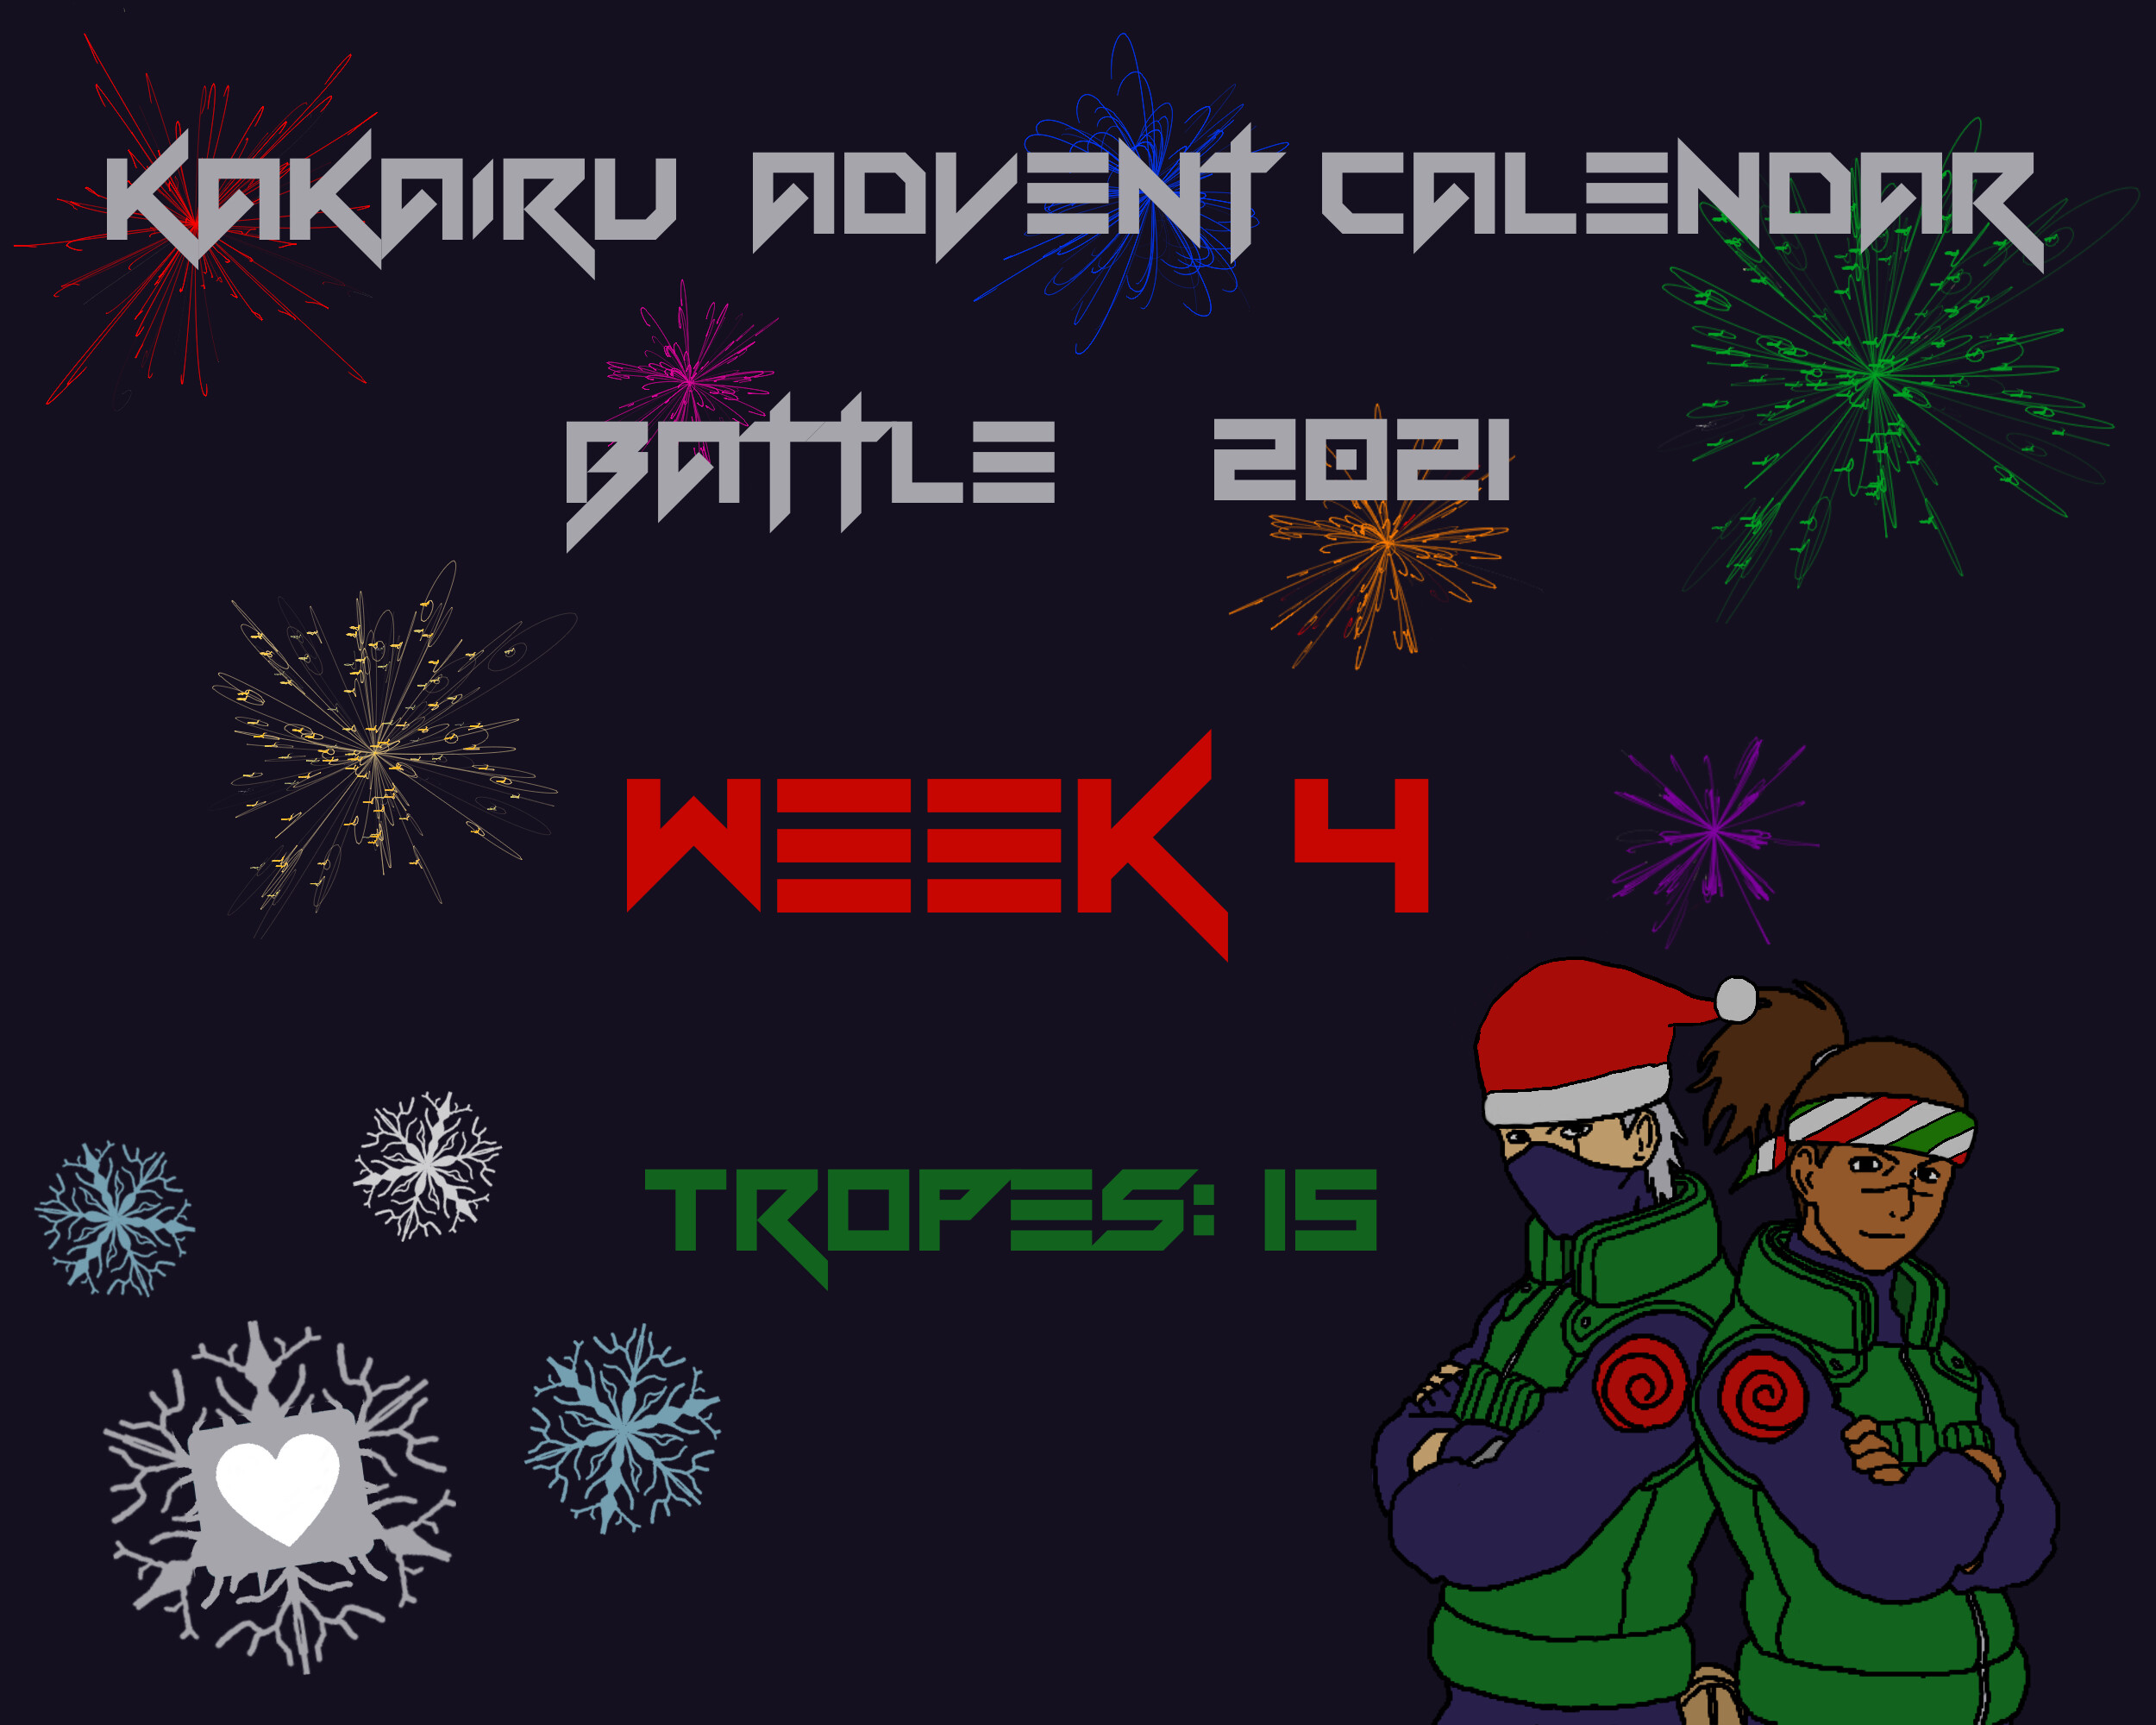 week 4 advent calendar battle